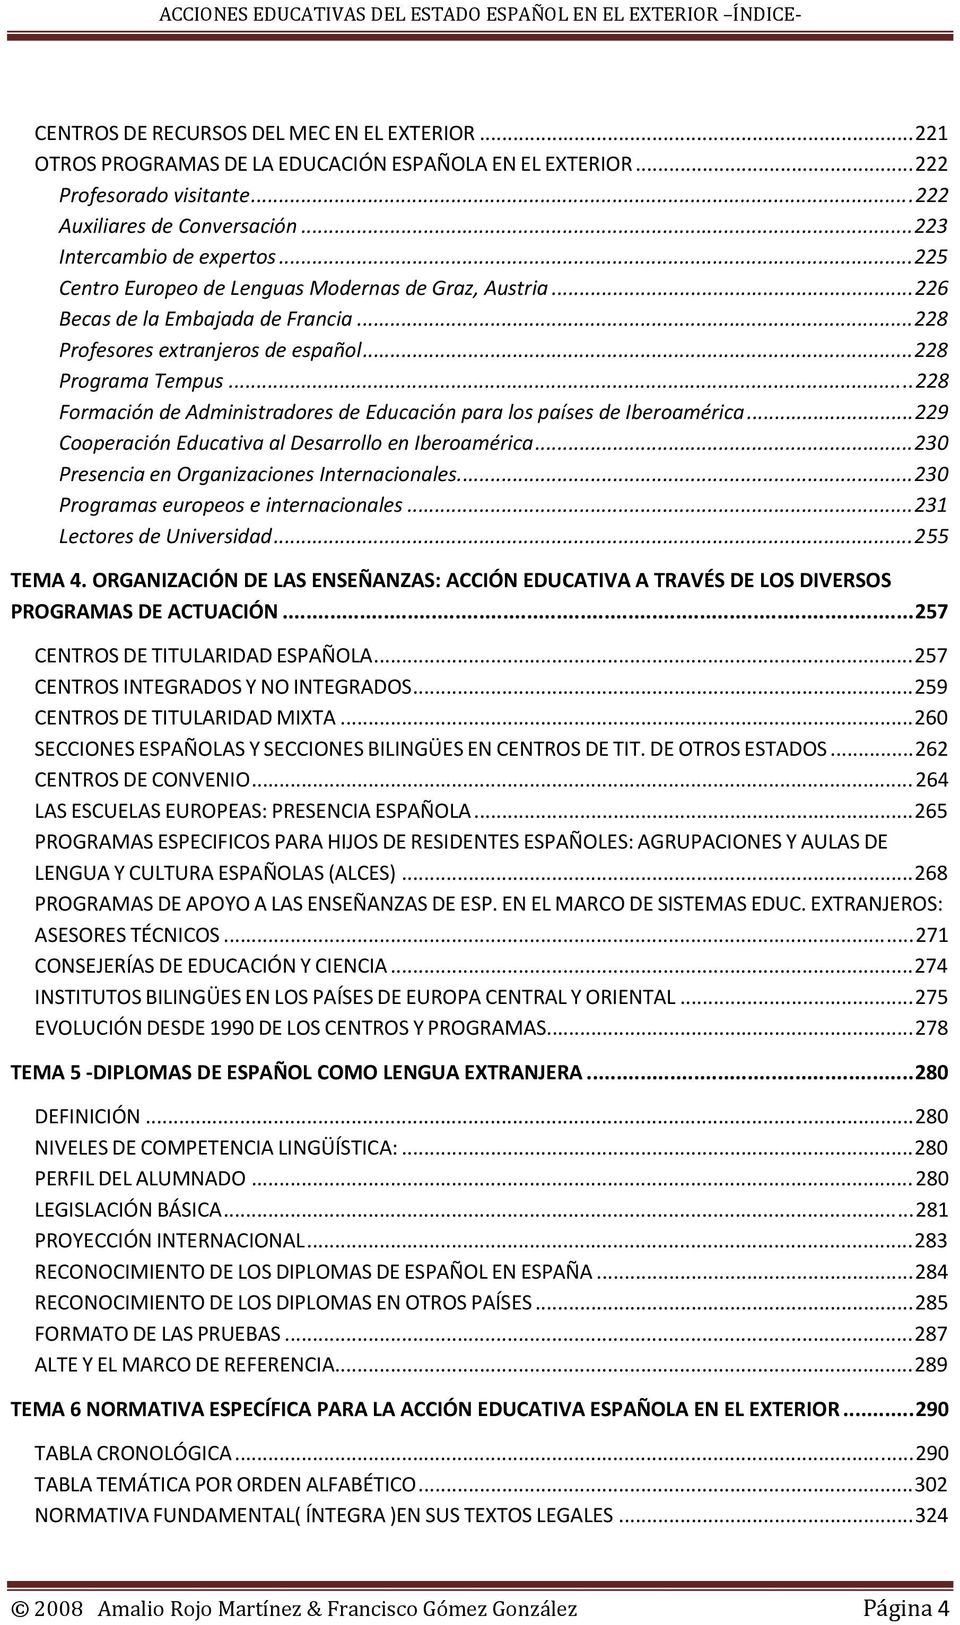 ..228 Formación de Administradores de Educación para los países de Iberoamérica...229 Cooperación Educativa al Desarrollo en Iberoamérica...230 Presencia en Organizaciones Internacionales.